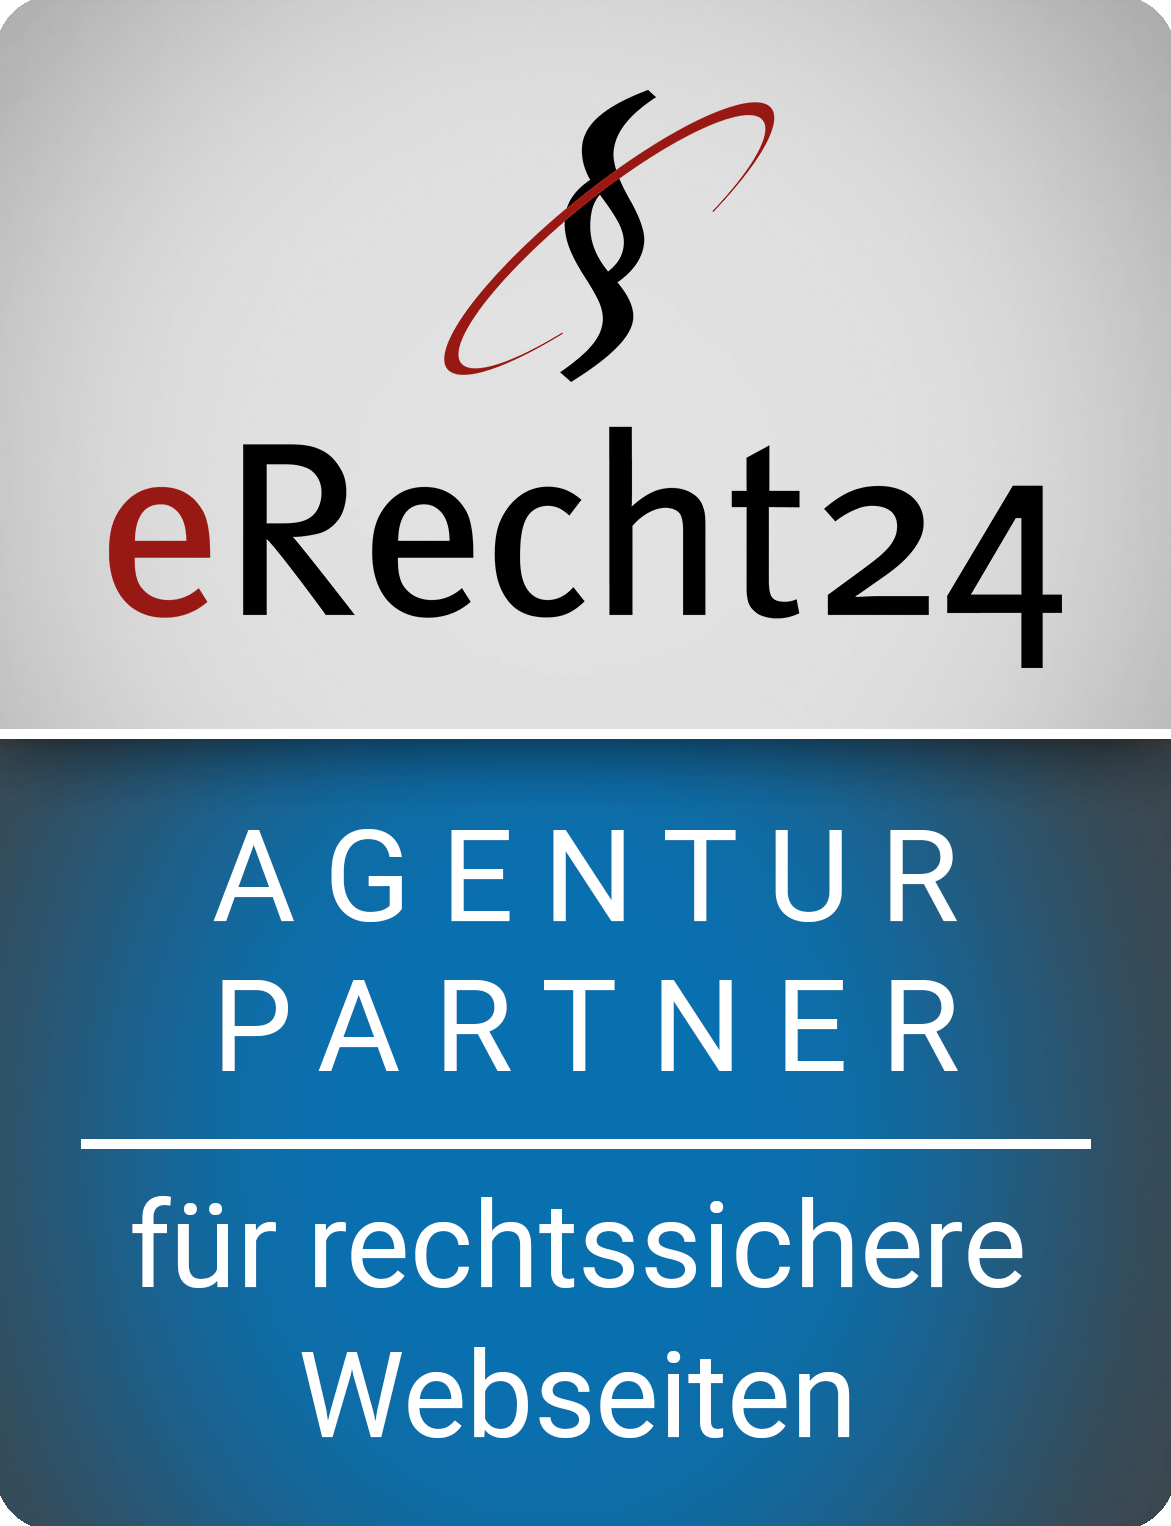 Wir sind Agenturpartner von eRecht24 Rechtsanwalt Sören Siebert. Das bedeutet mehr Rechtssicherheit von eRecht24 für die Kunden-Webseiten von GS Werbung + Webservice